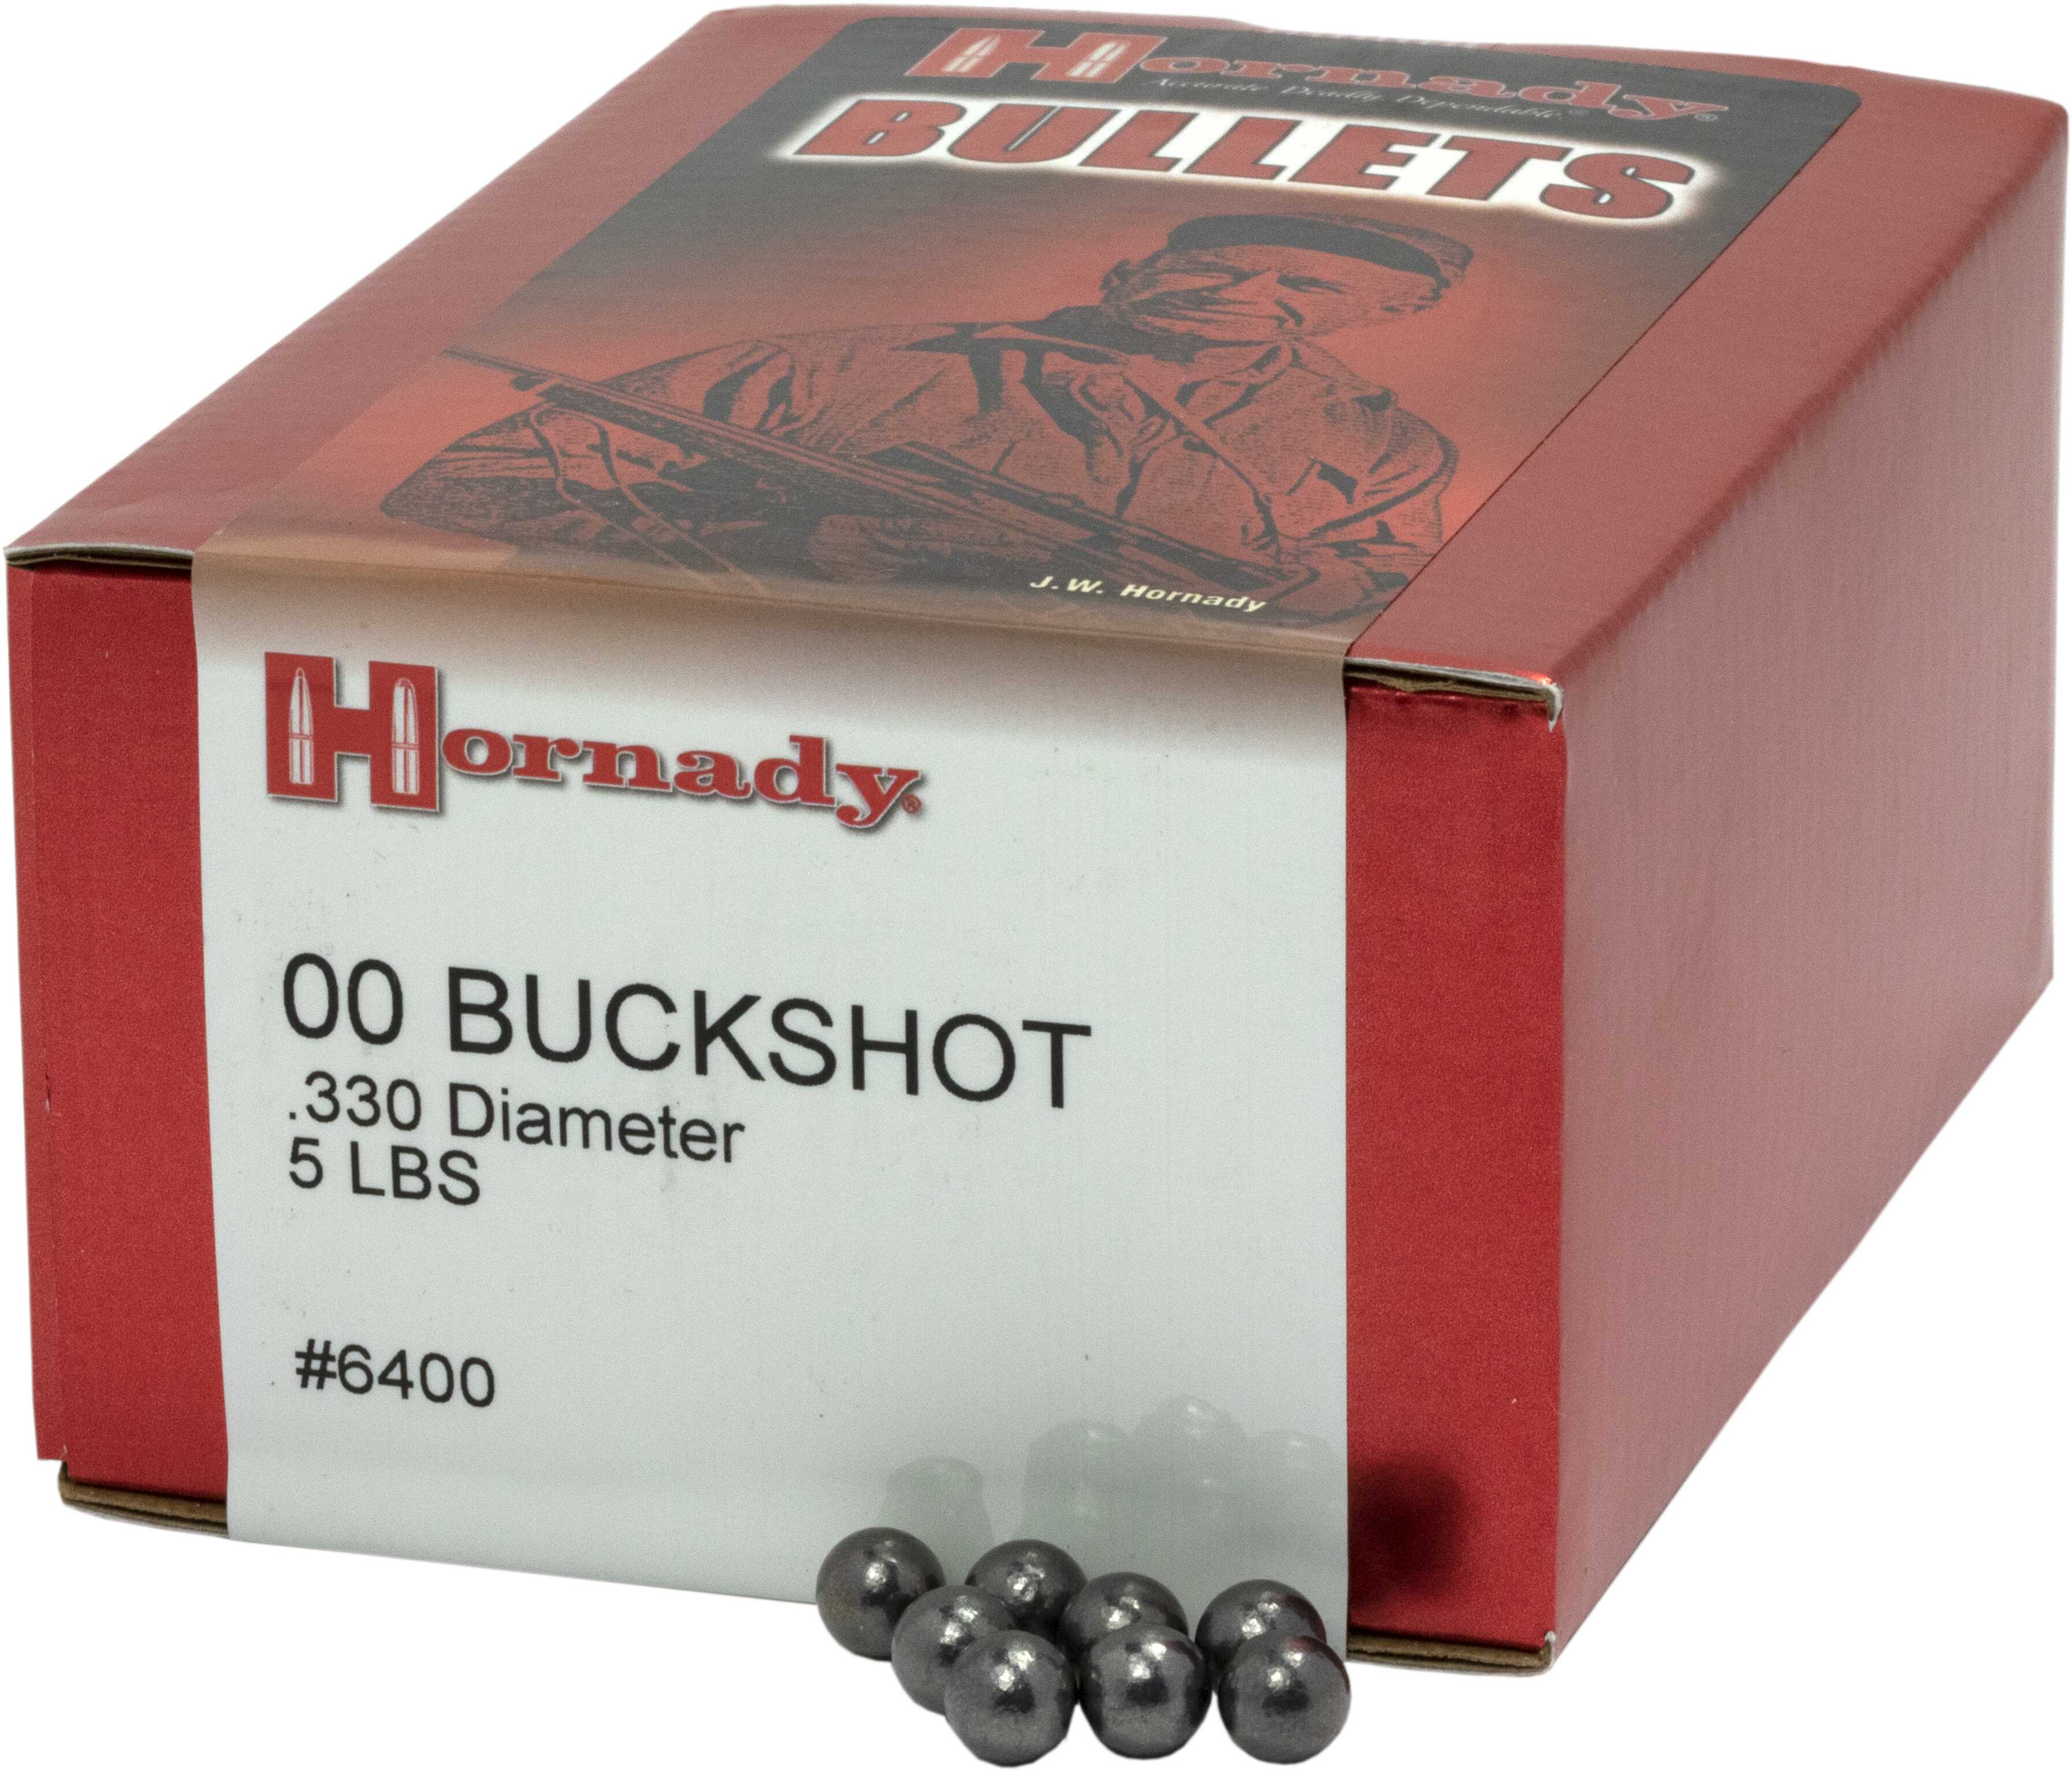 Hornady 00 Buckshot .330 Diameter